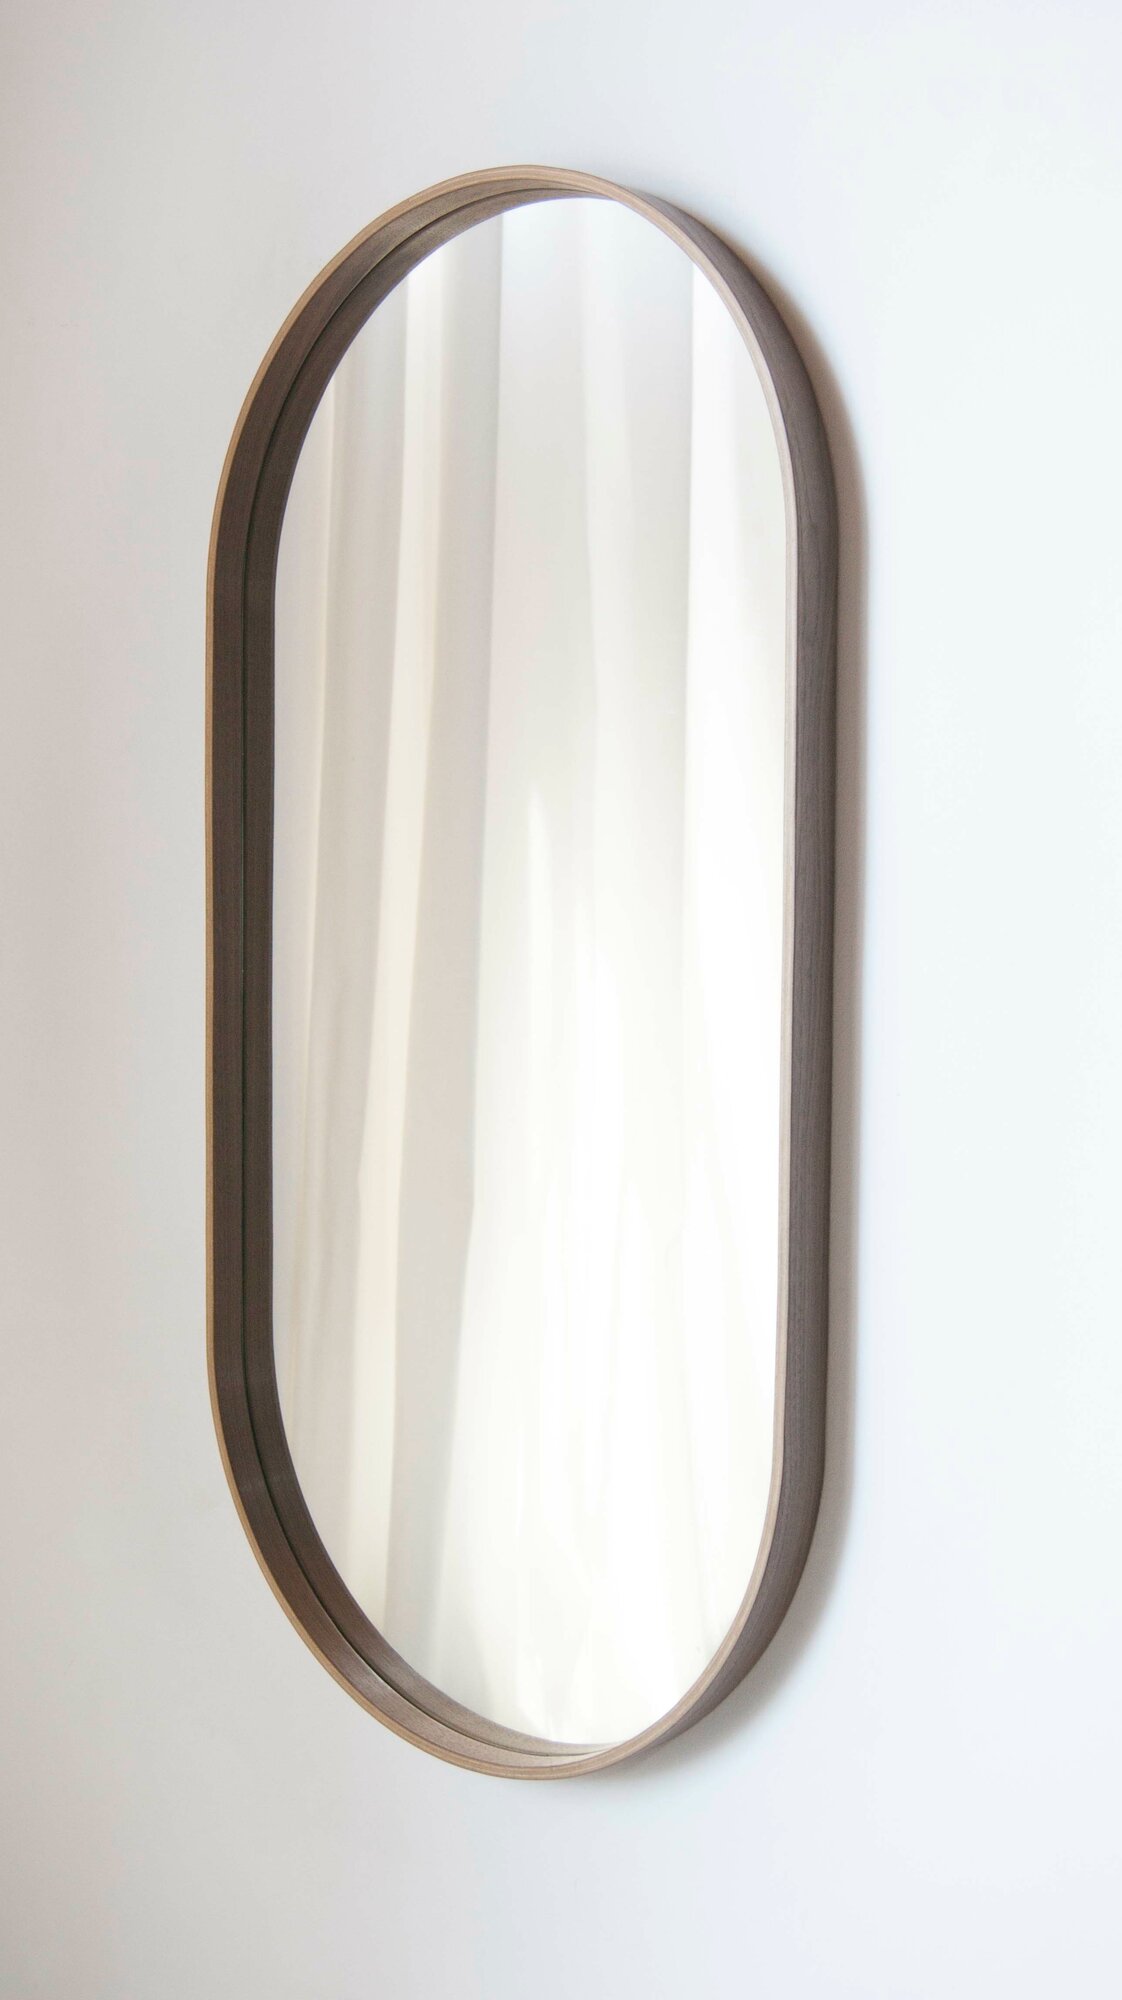 Зеркало овальное настенное натуральный шпон дуб зеркало интерьерное Зеркало овальное настенное натуральный шпон дуб зеркало интерьерное